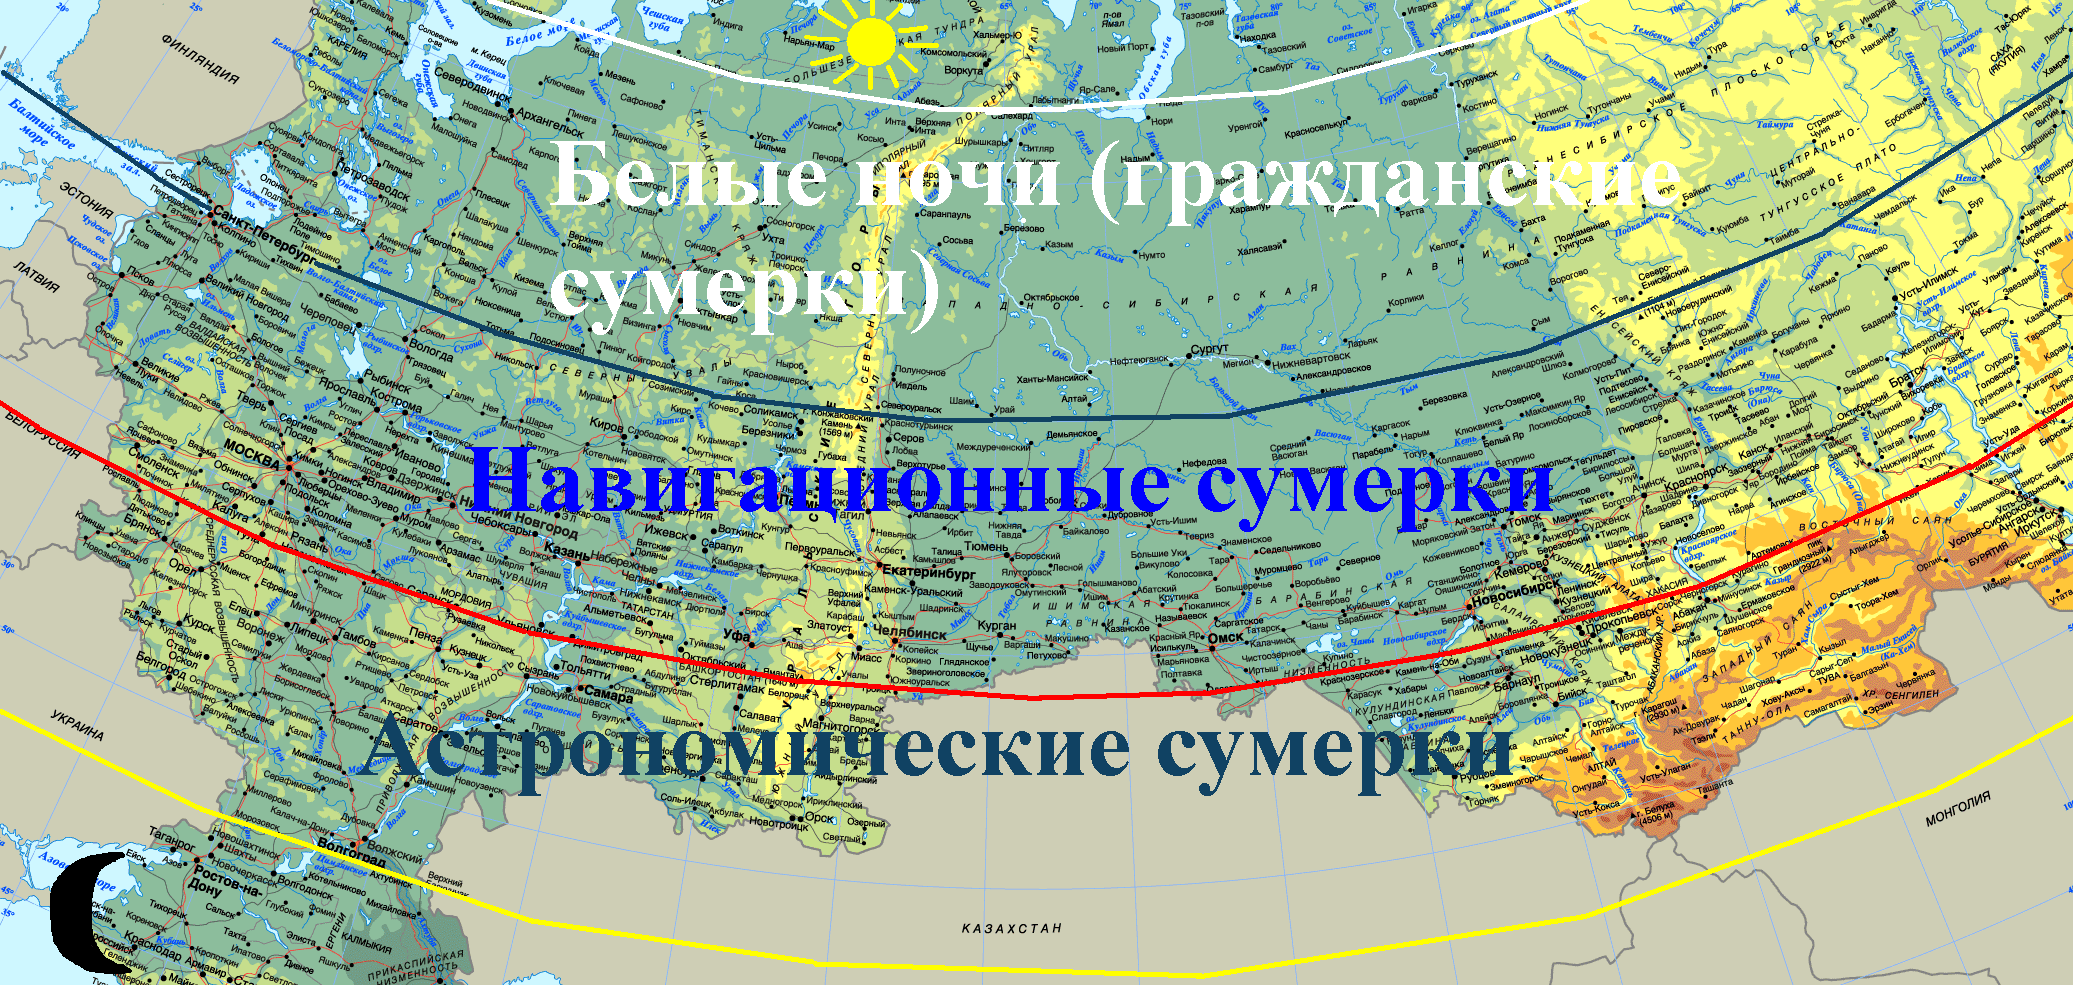 Какие есть полярные круги. Карта белых ночей в России. Белые ночи на карте. Сумерки гражданские навигационные астрономические. Полярный круг на карте.